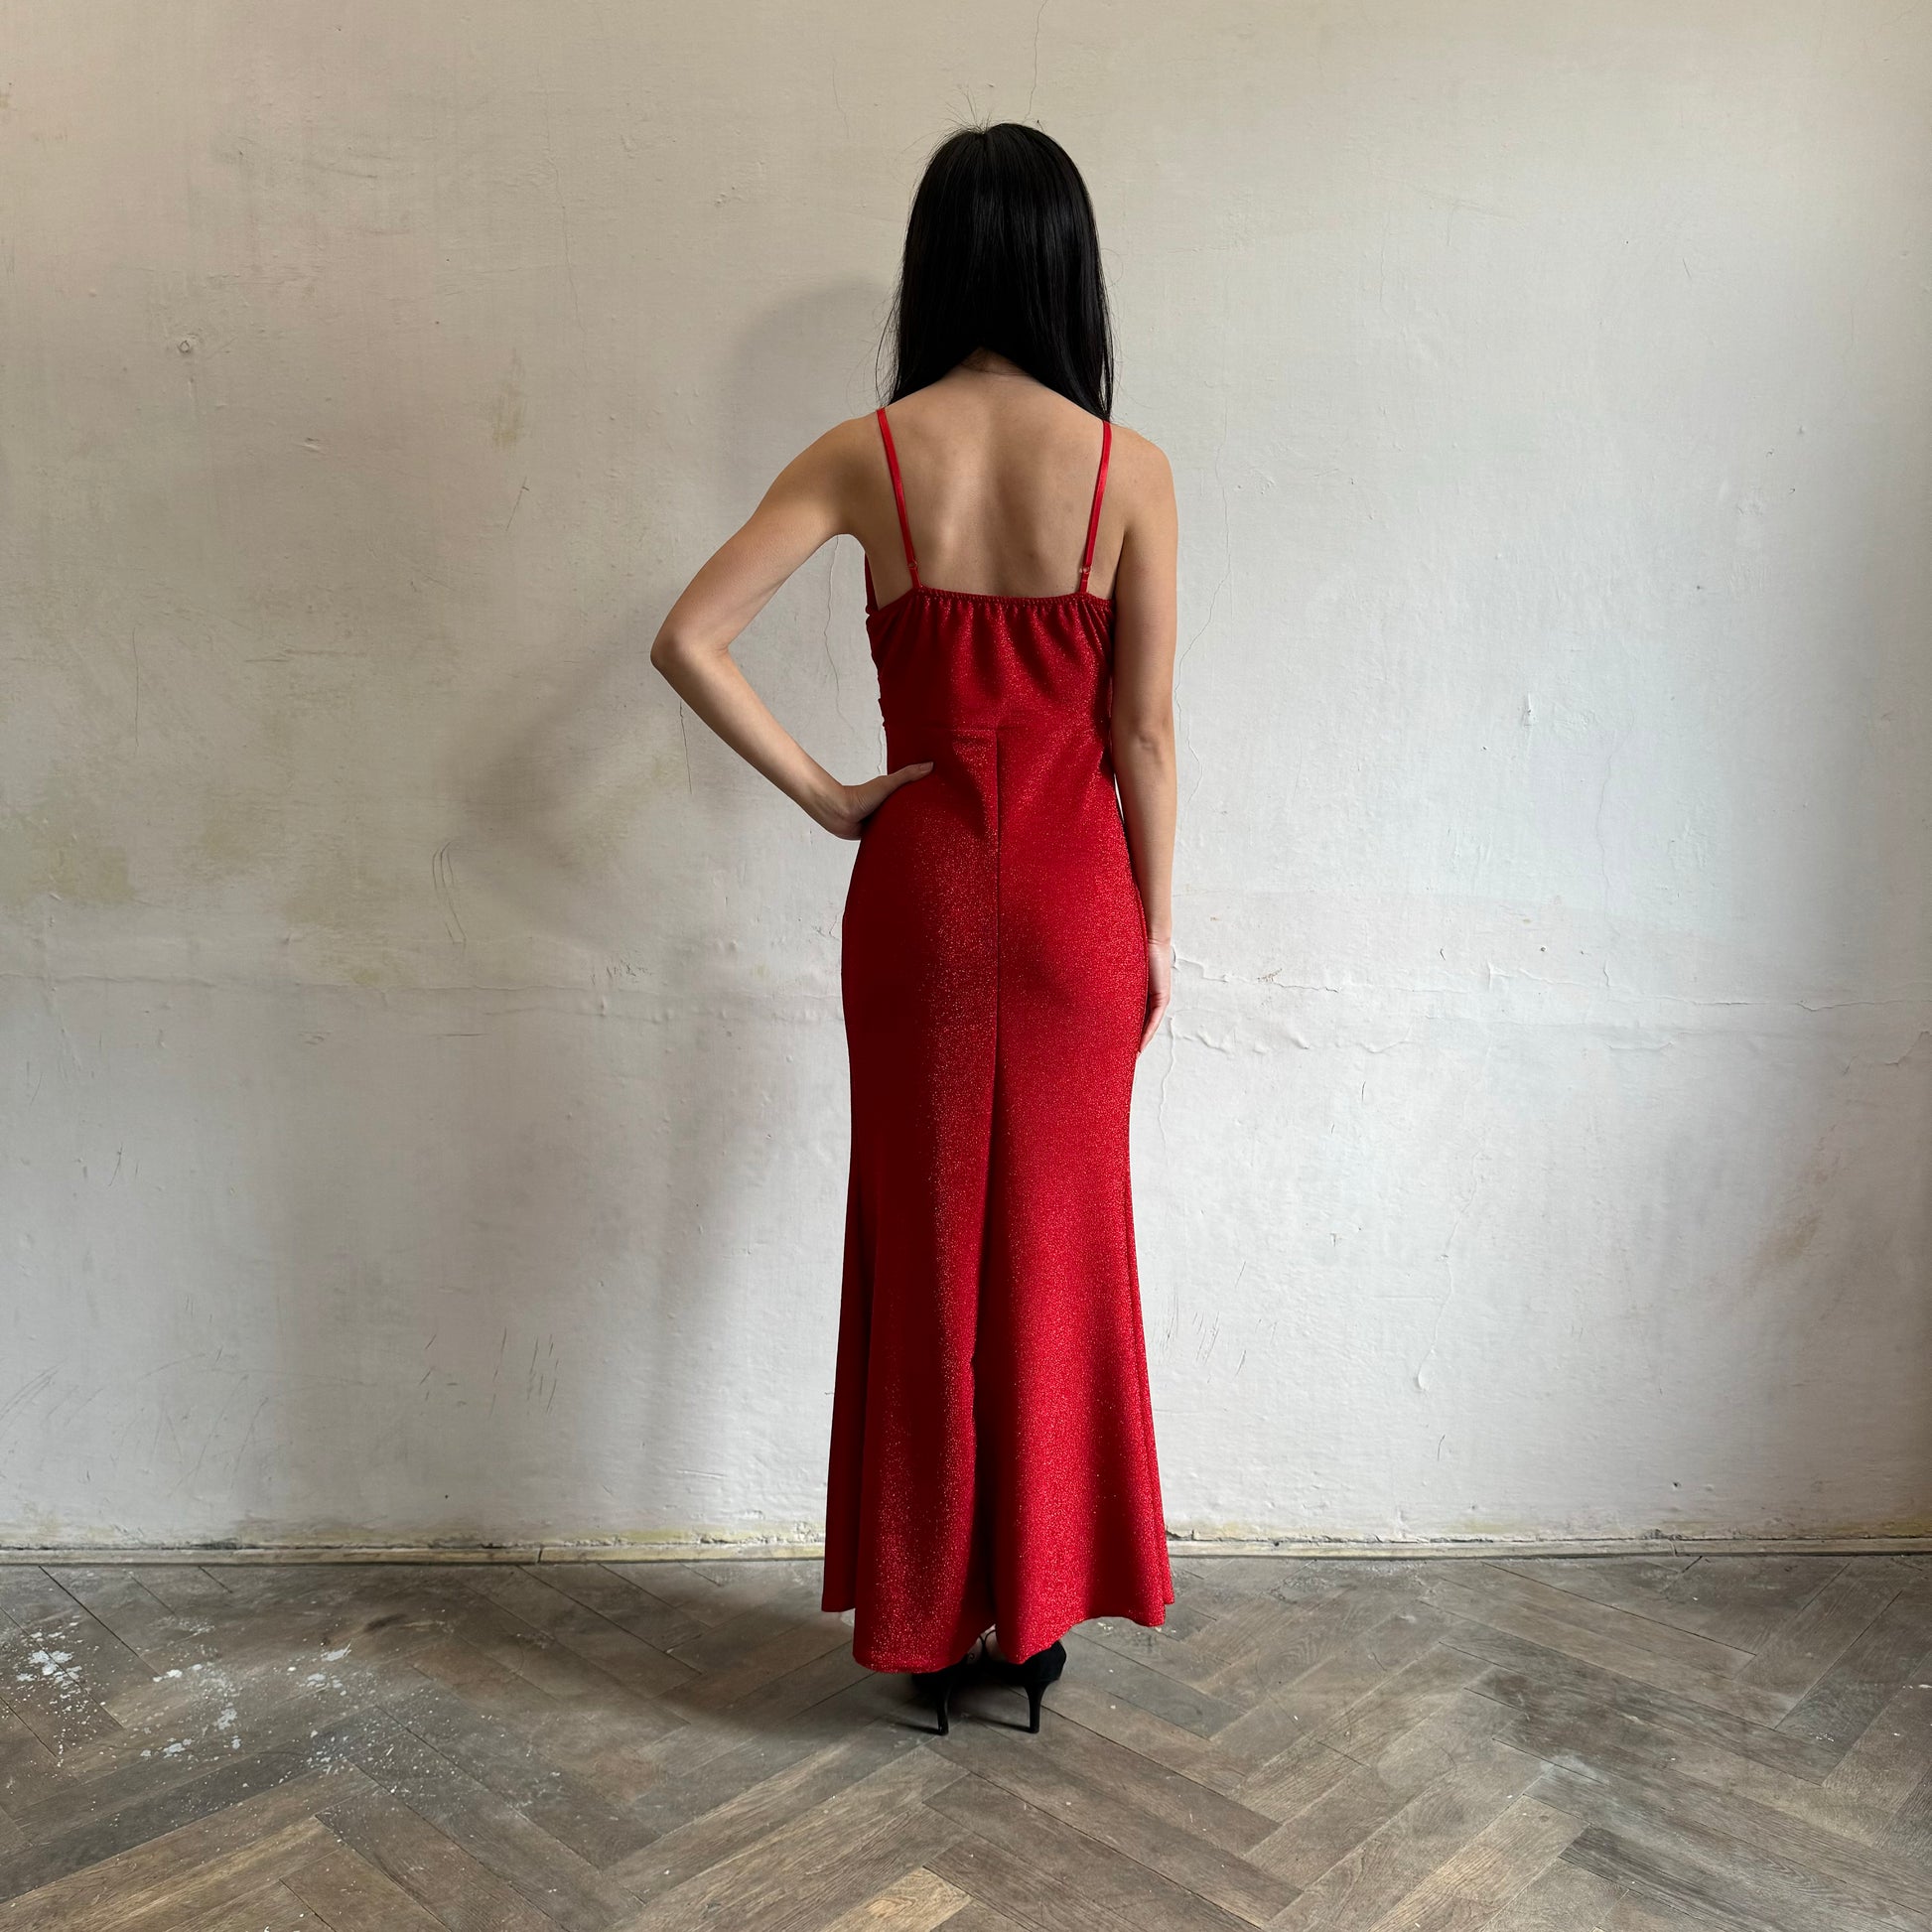 Modelka asijského původu pózující zezadu se třpytivými společenskými šaty v červené barvě